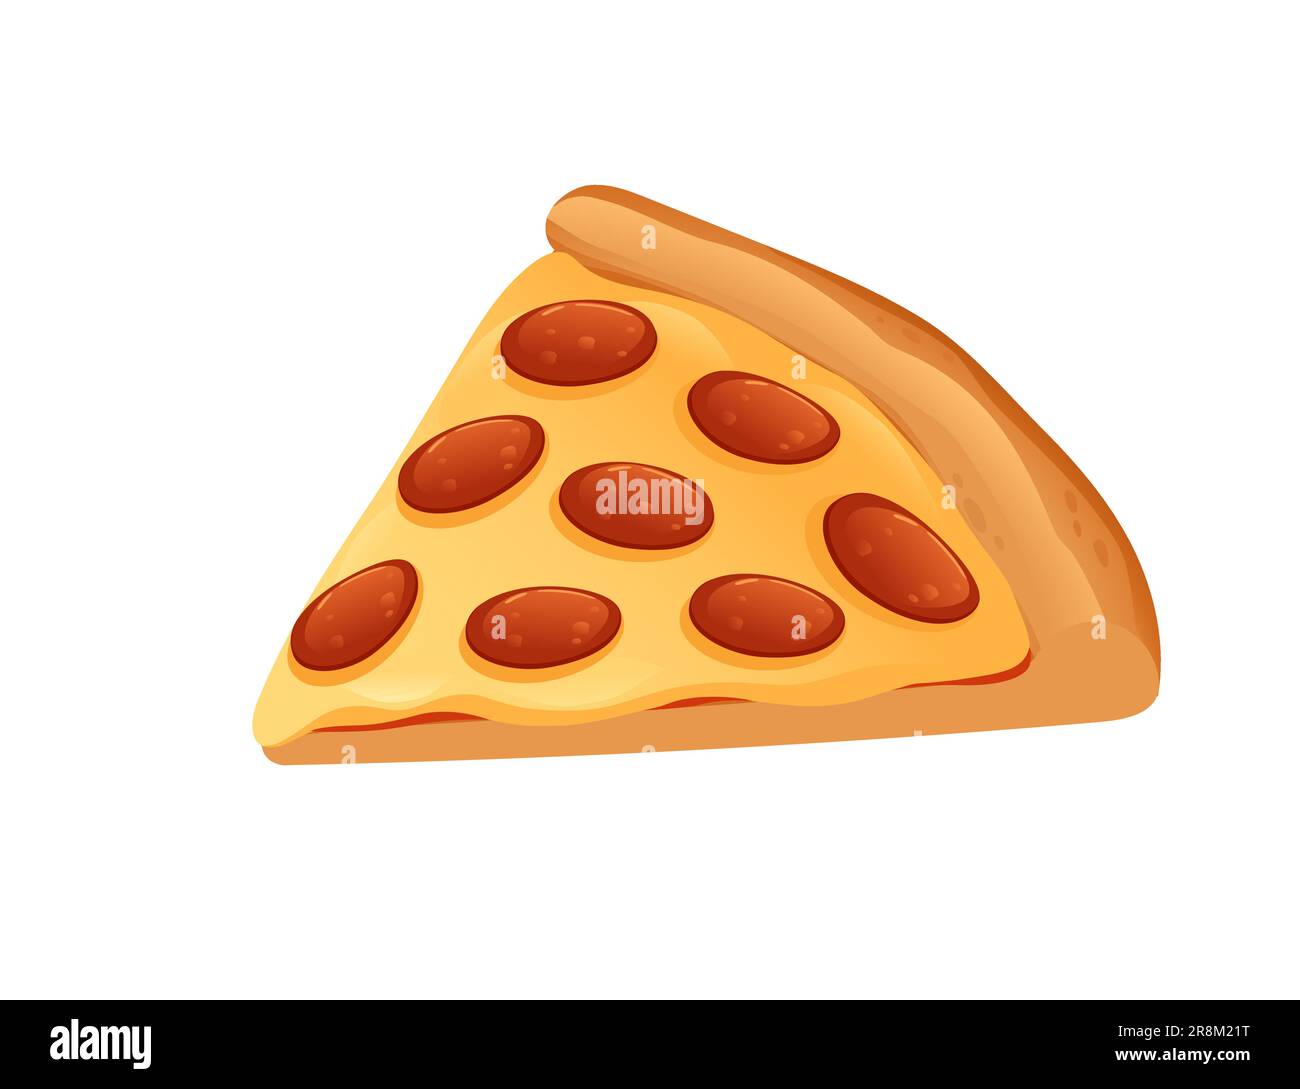 Tranche de pizza pepperoni au fromage et illustration vectorielle salami isolée sur fond blanc Illustration de Vecteur